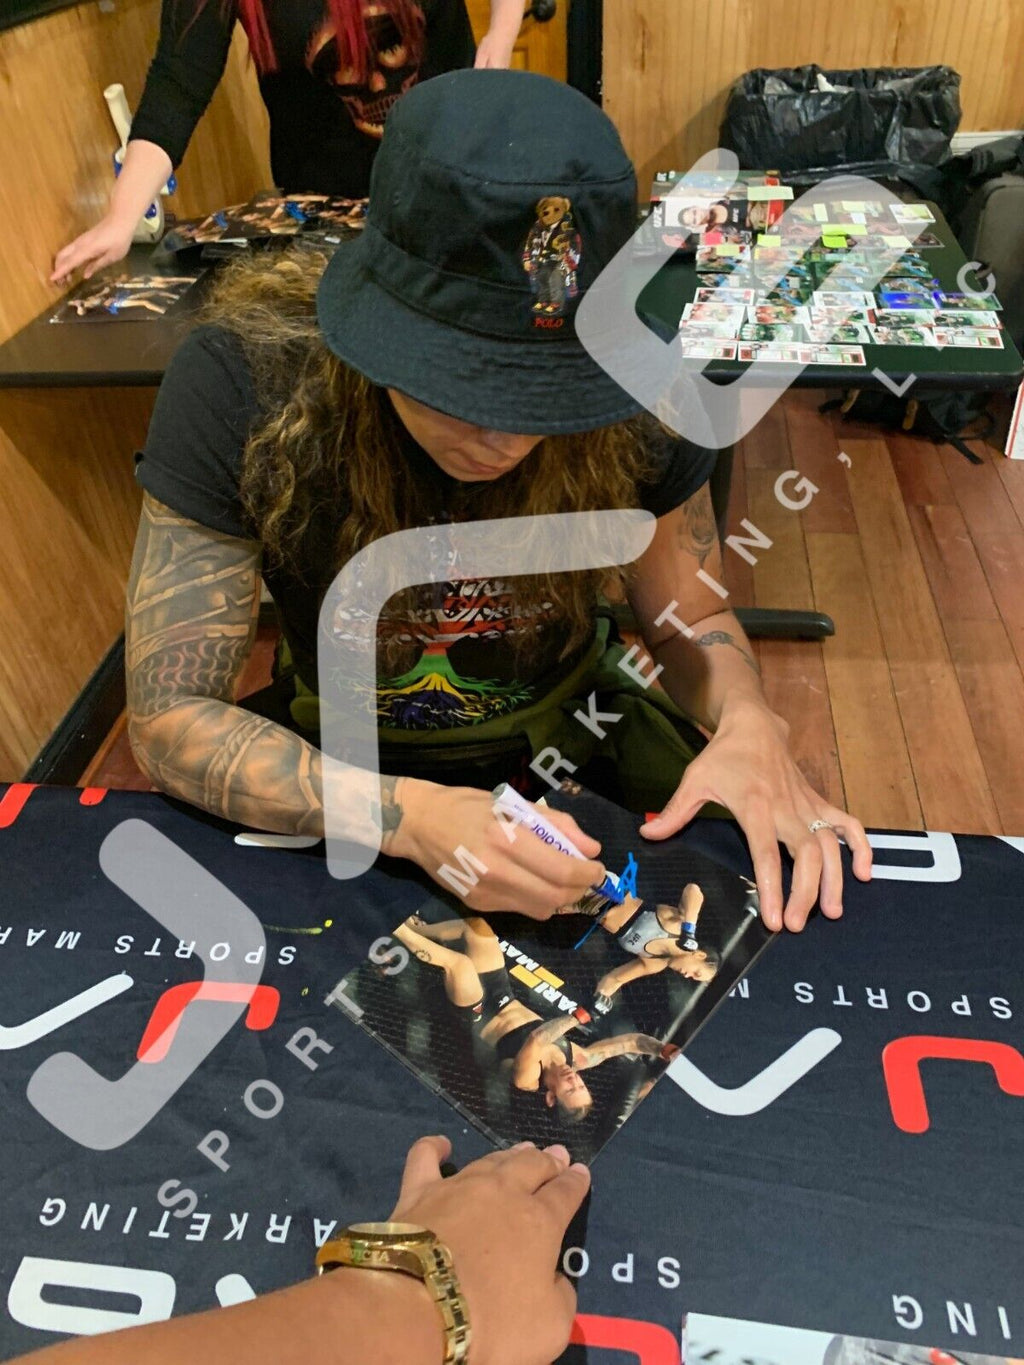 Amanda Nunes autographed signed framed 8x10 photo UFC JSA COA Cris Cyborg